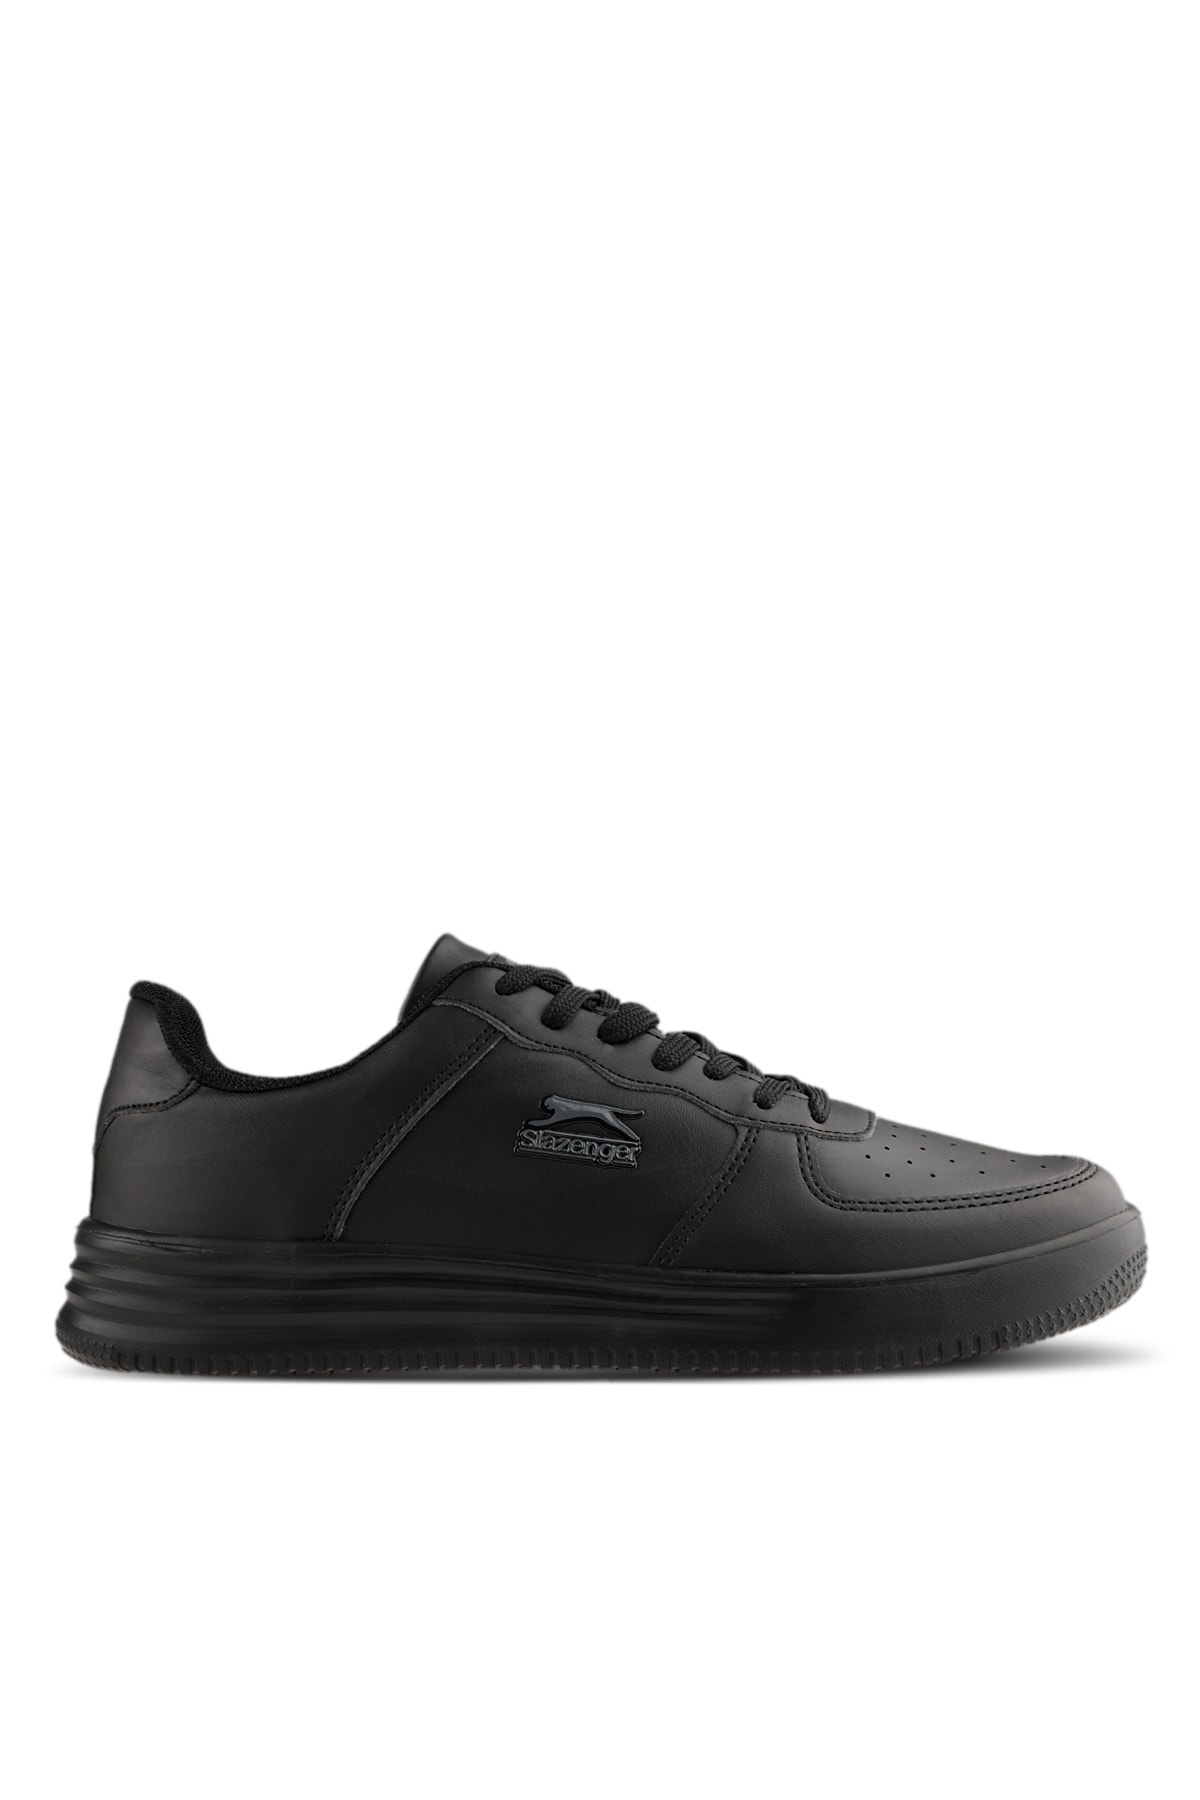 Slazenger Carbon Sneaker Erkek Ayakkabı Siyah / Siyah